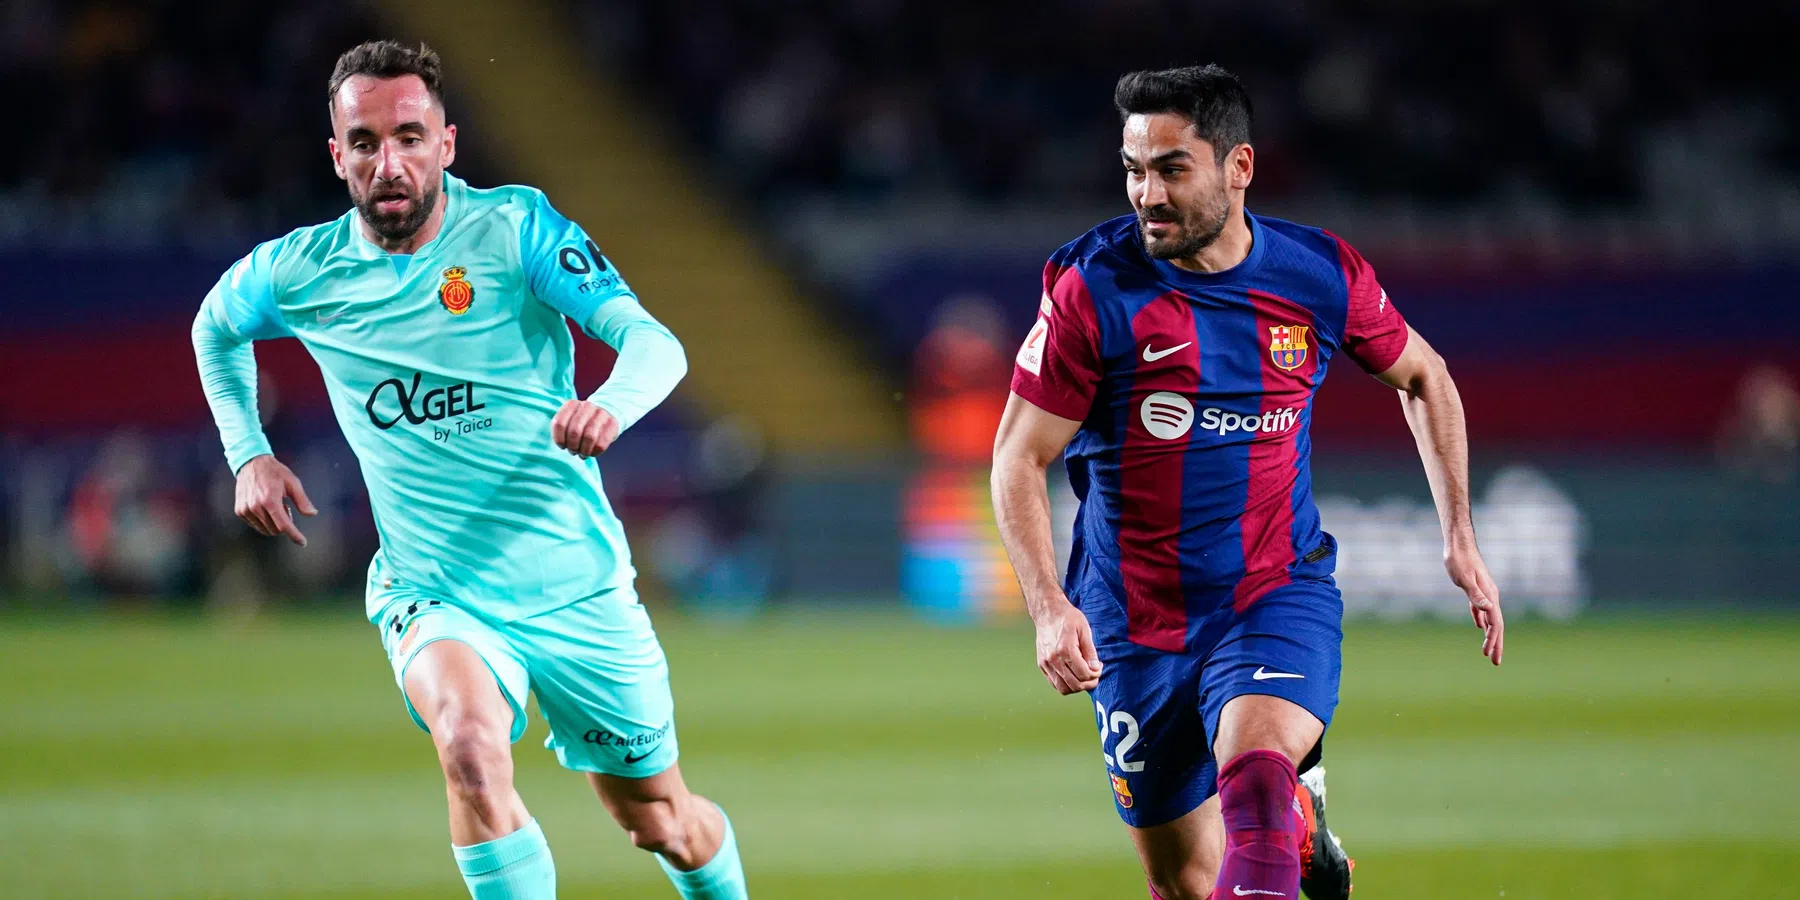 Frenkie-loos Barça dankt piepjonge Yamal (16) en boekt minimale overwinning